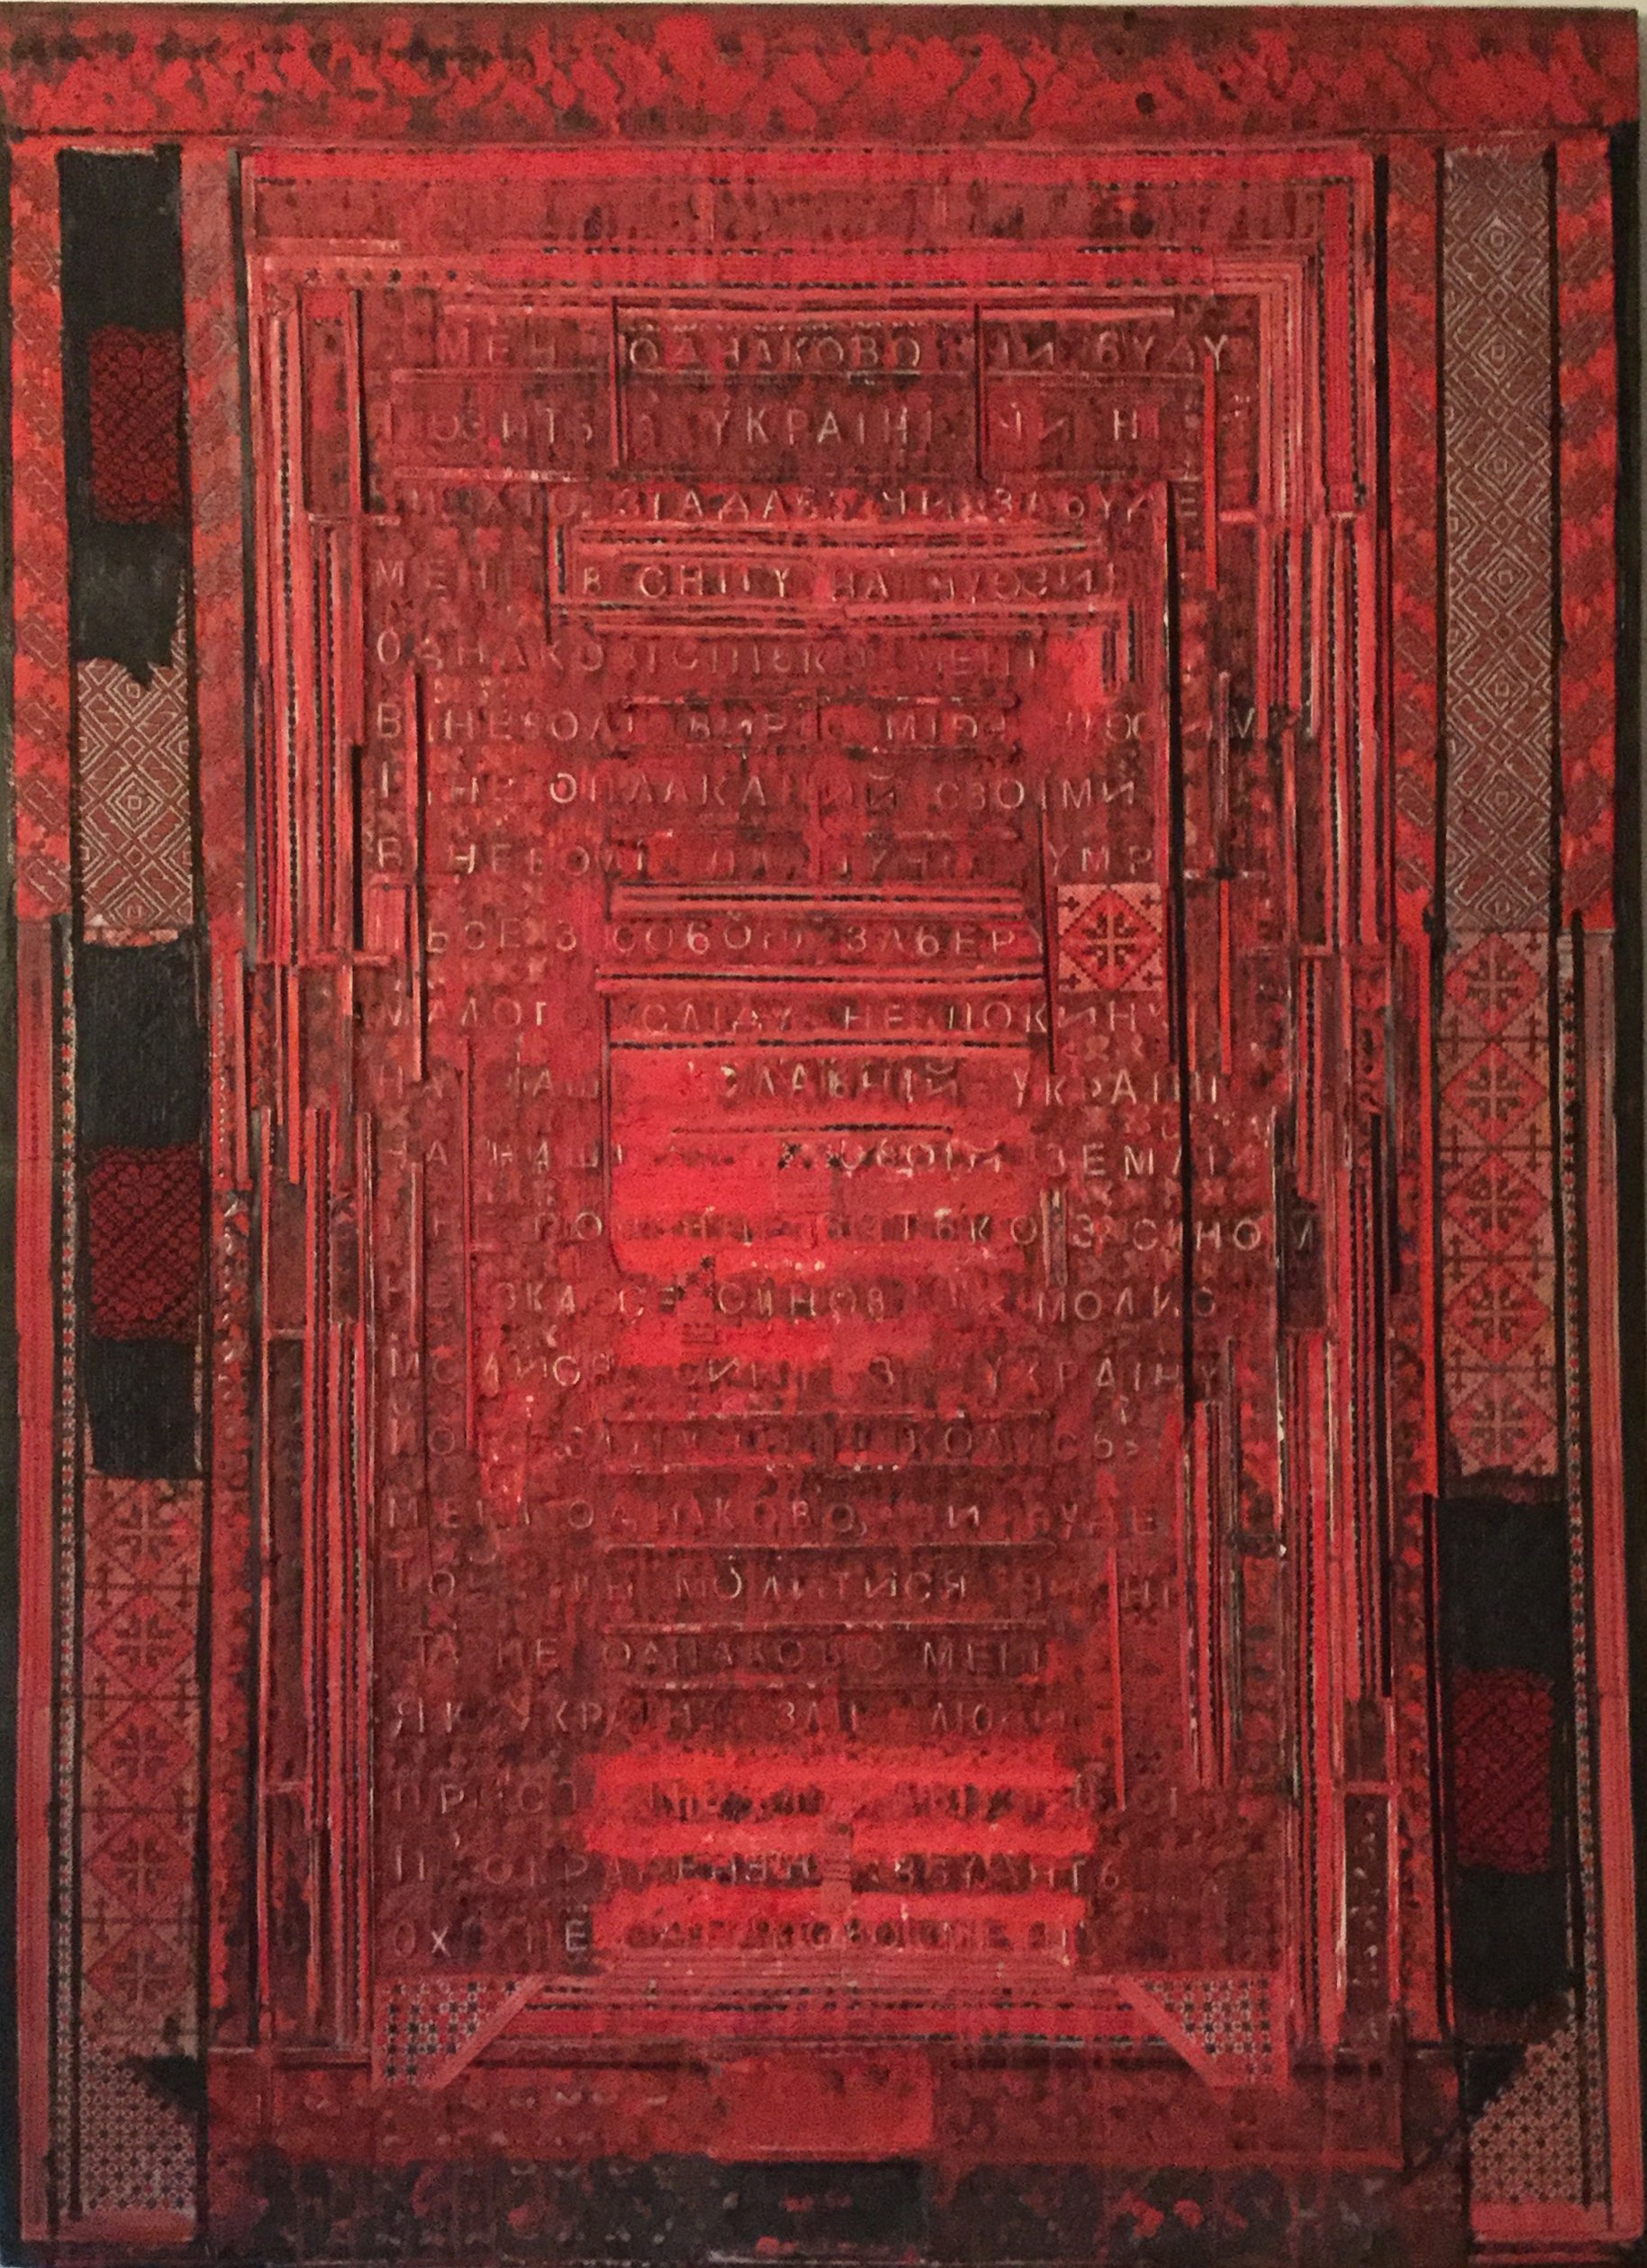 2bi(0) - Shevchenko's Words, plaster, oil, wax, embroidery on fabric, 60x44 in 2018 -1.jpg